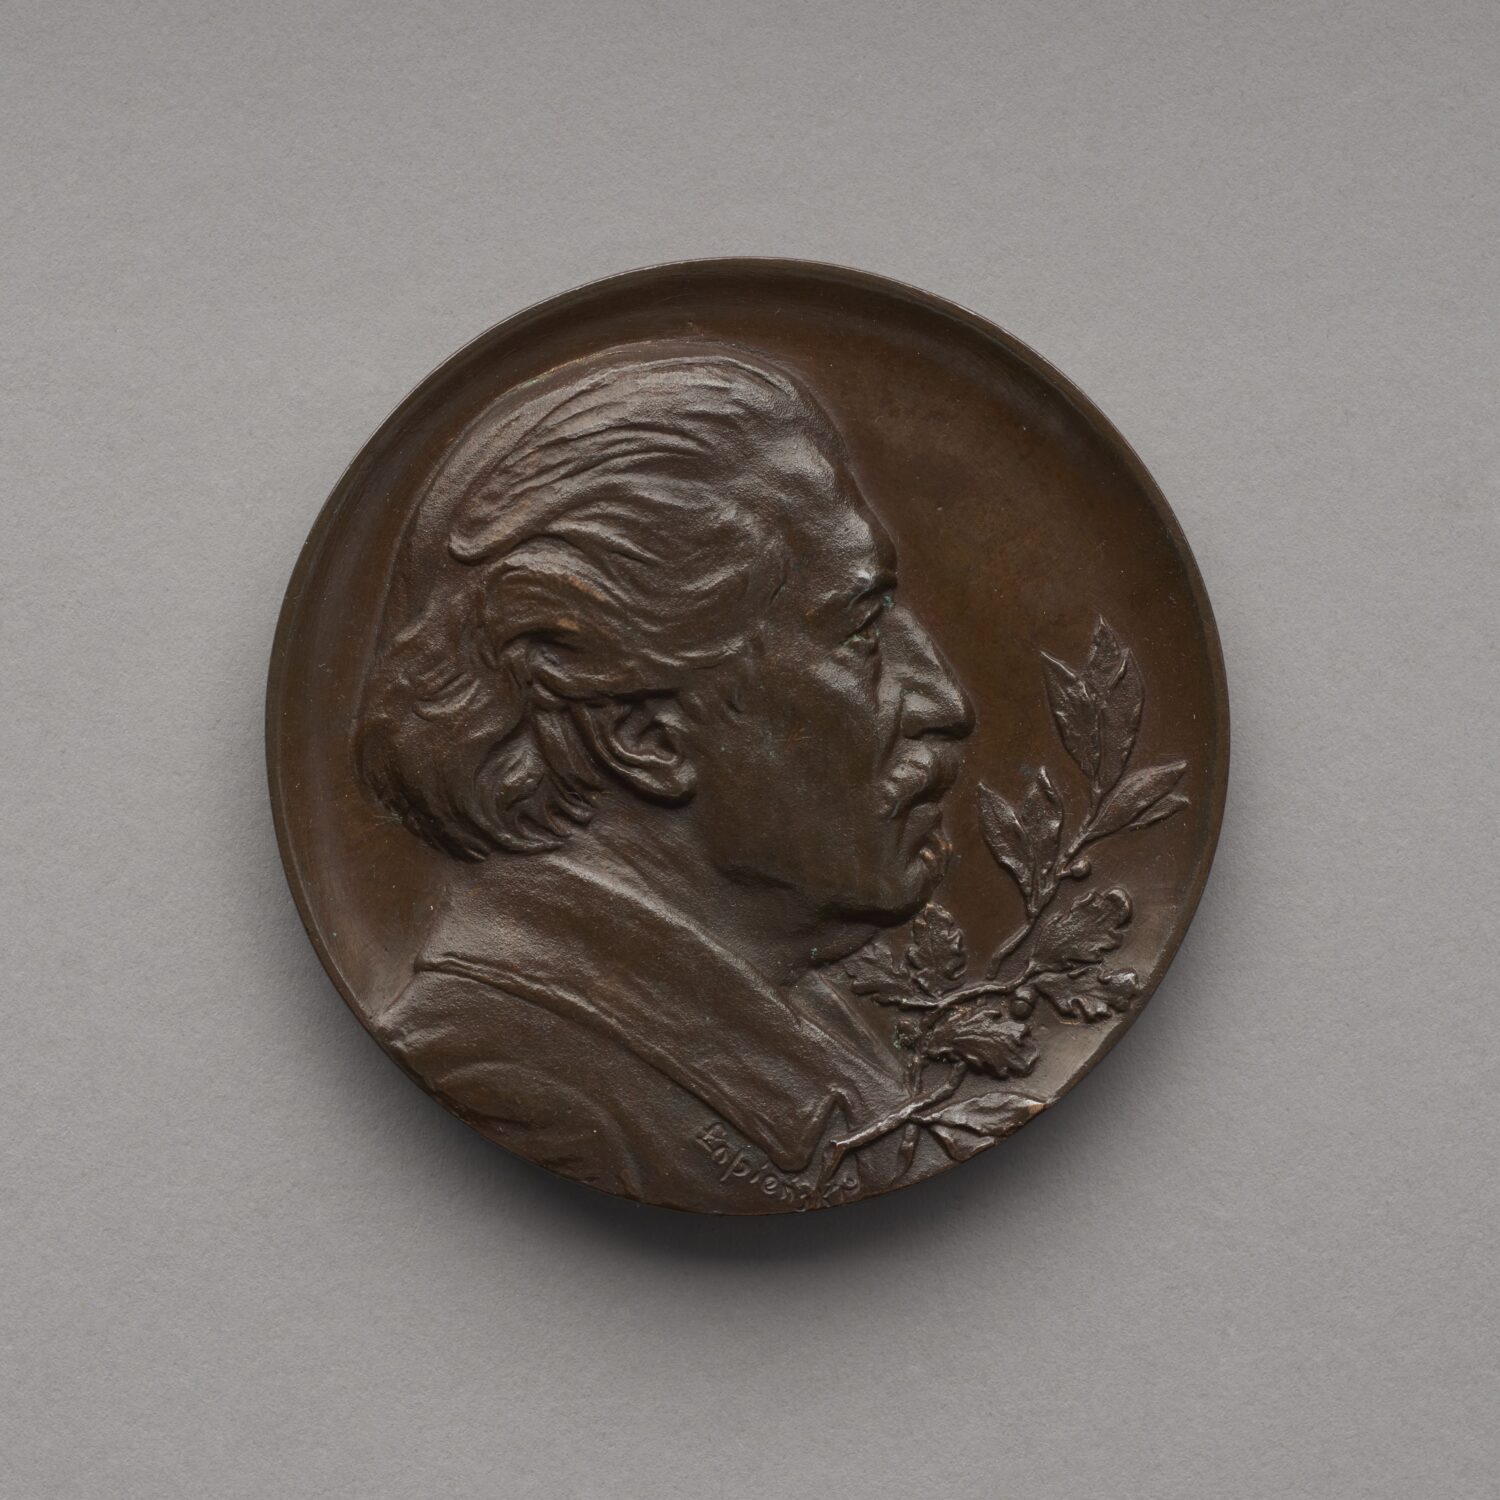 Zdjęcie medalu. Na medalu płaskorzeźbione popiersie mężczyzny z profilu.